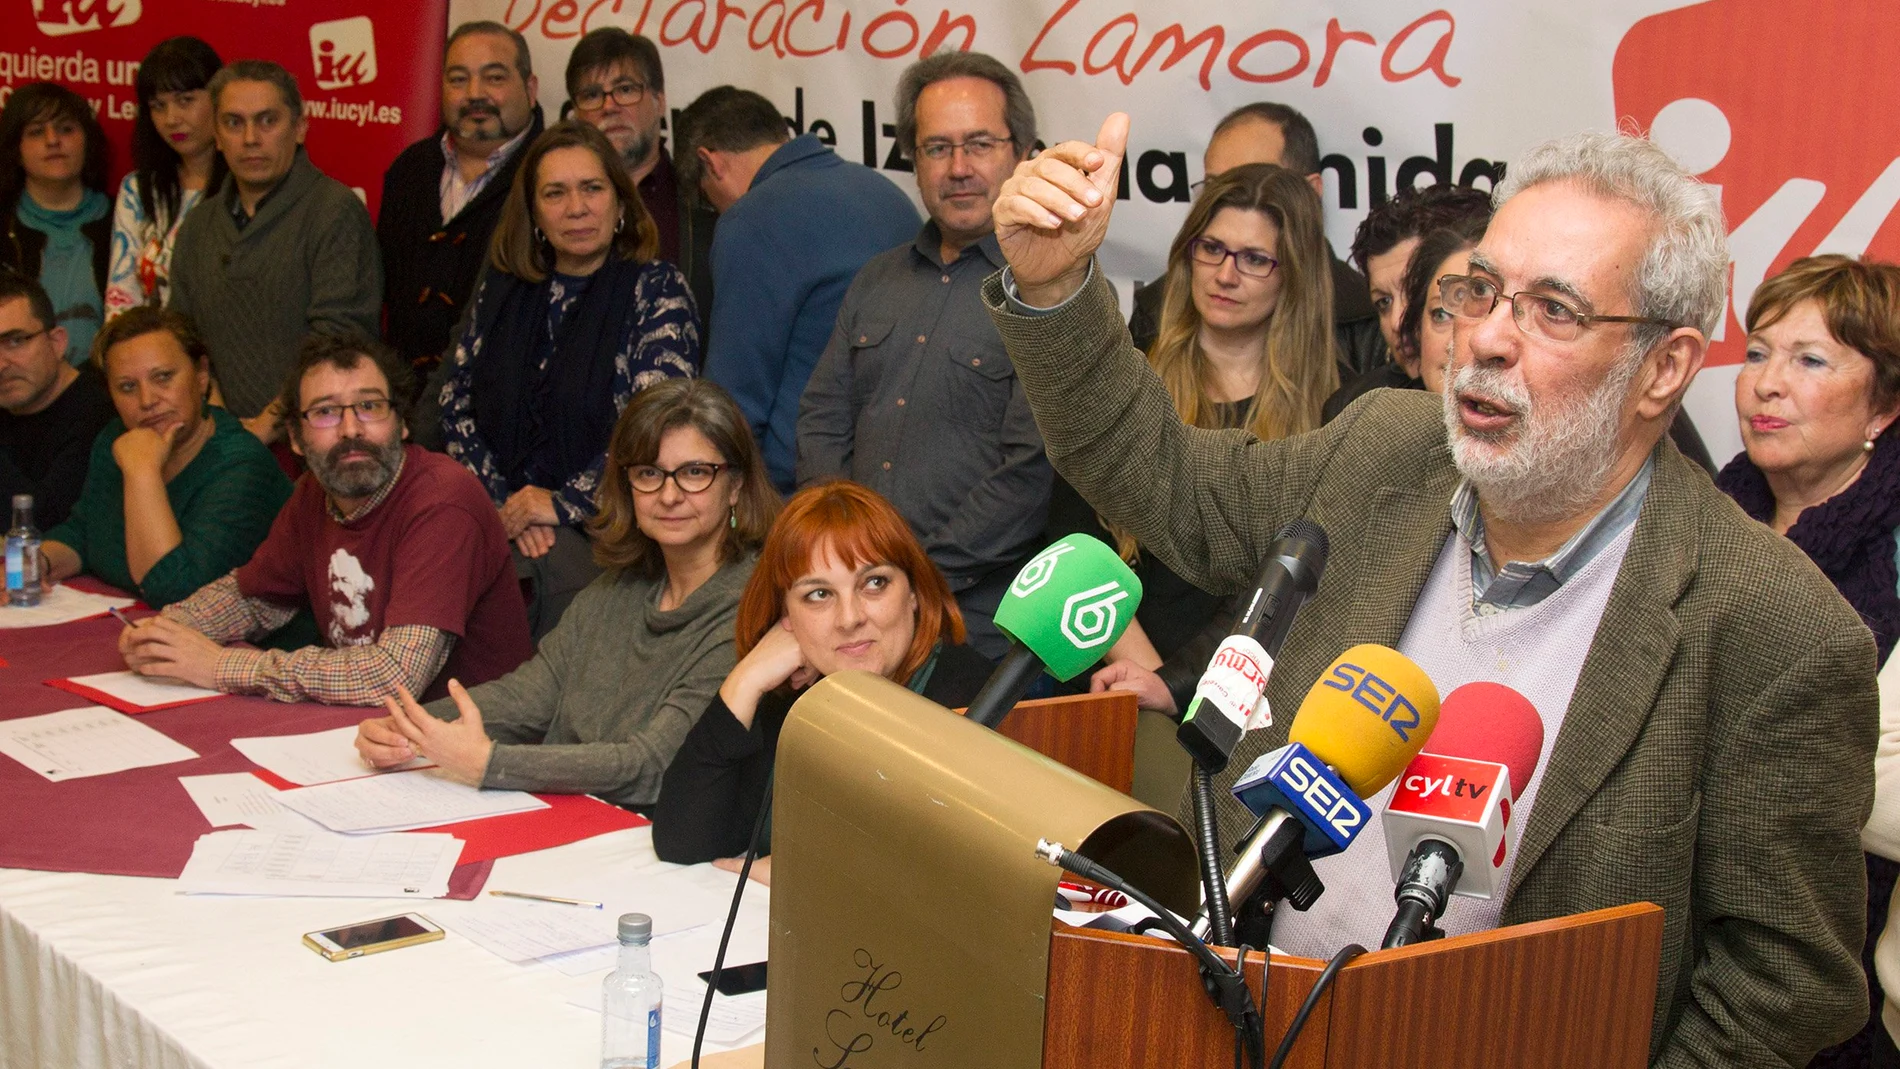 La 'Declaración de Zamora' de Izquierda Unida